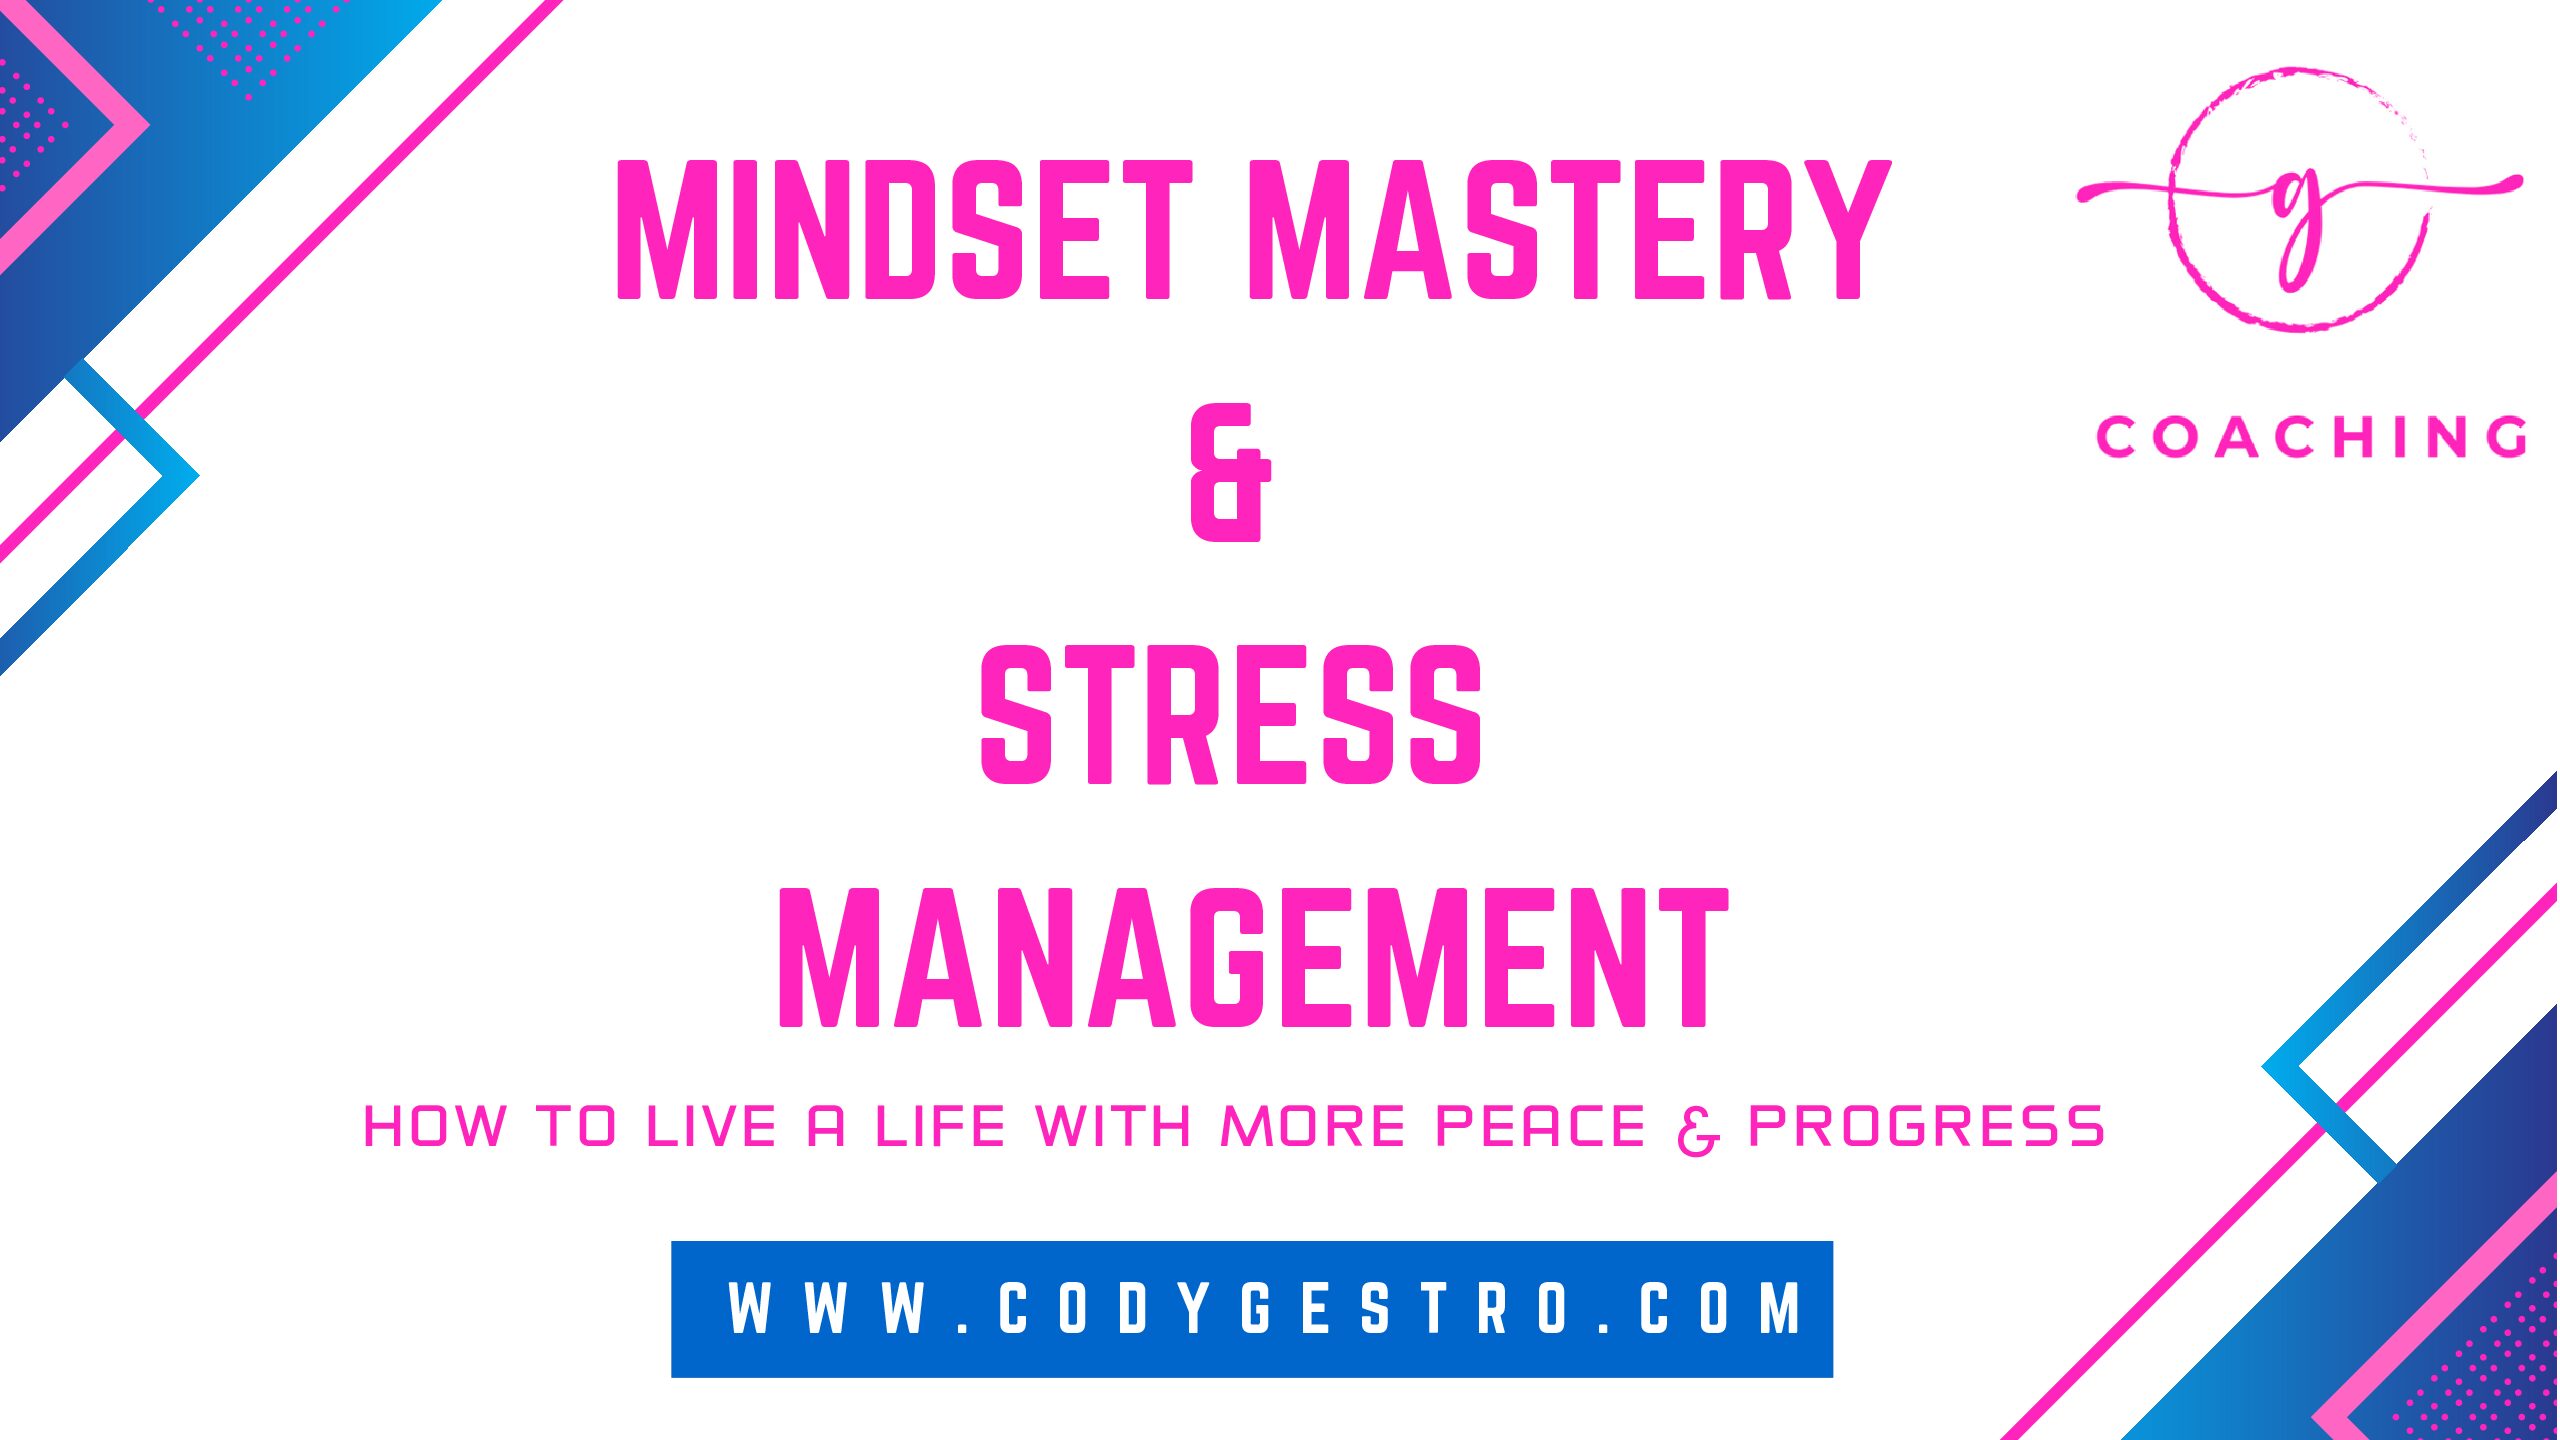 Mindset Mastery & Stress Management